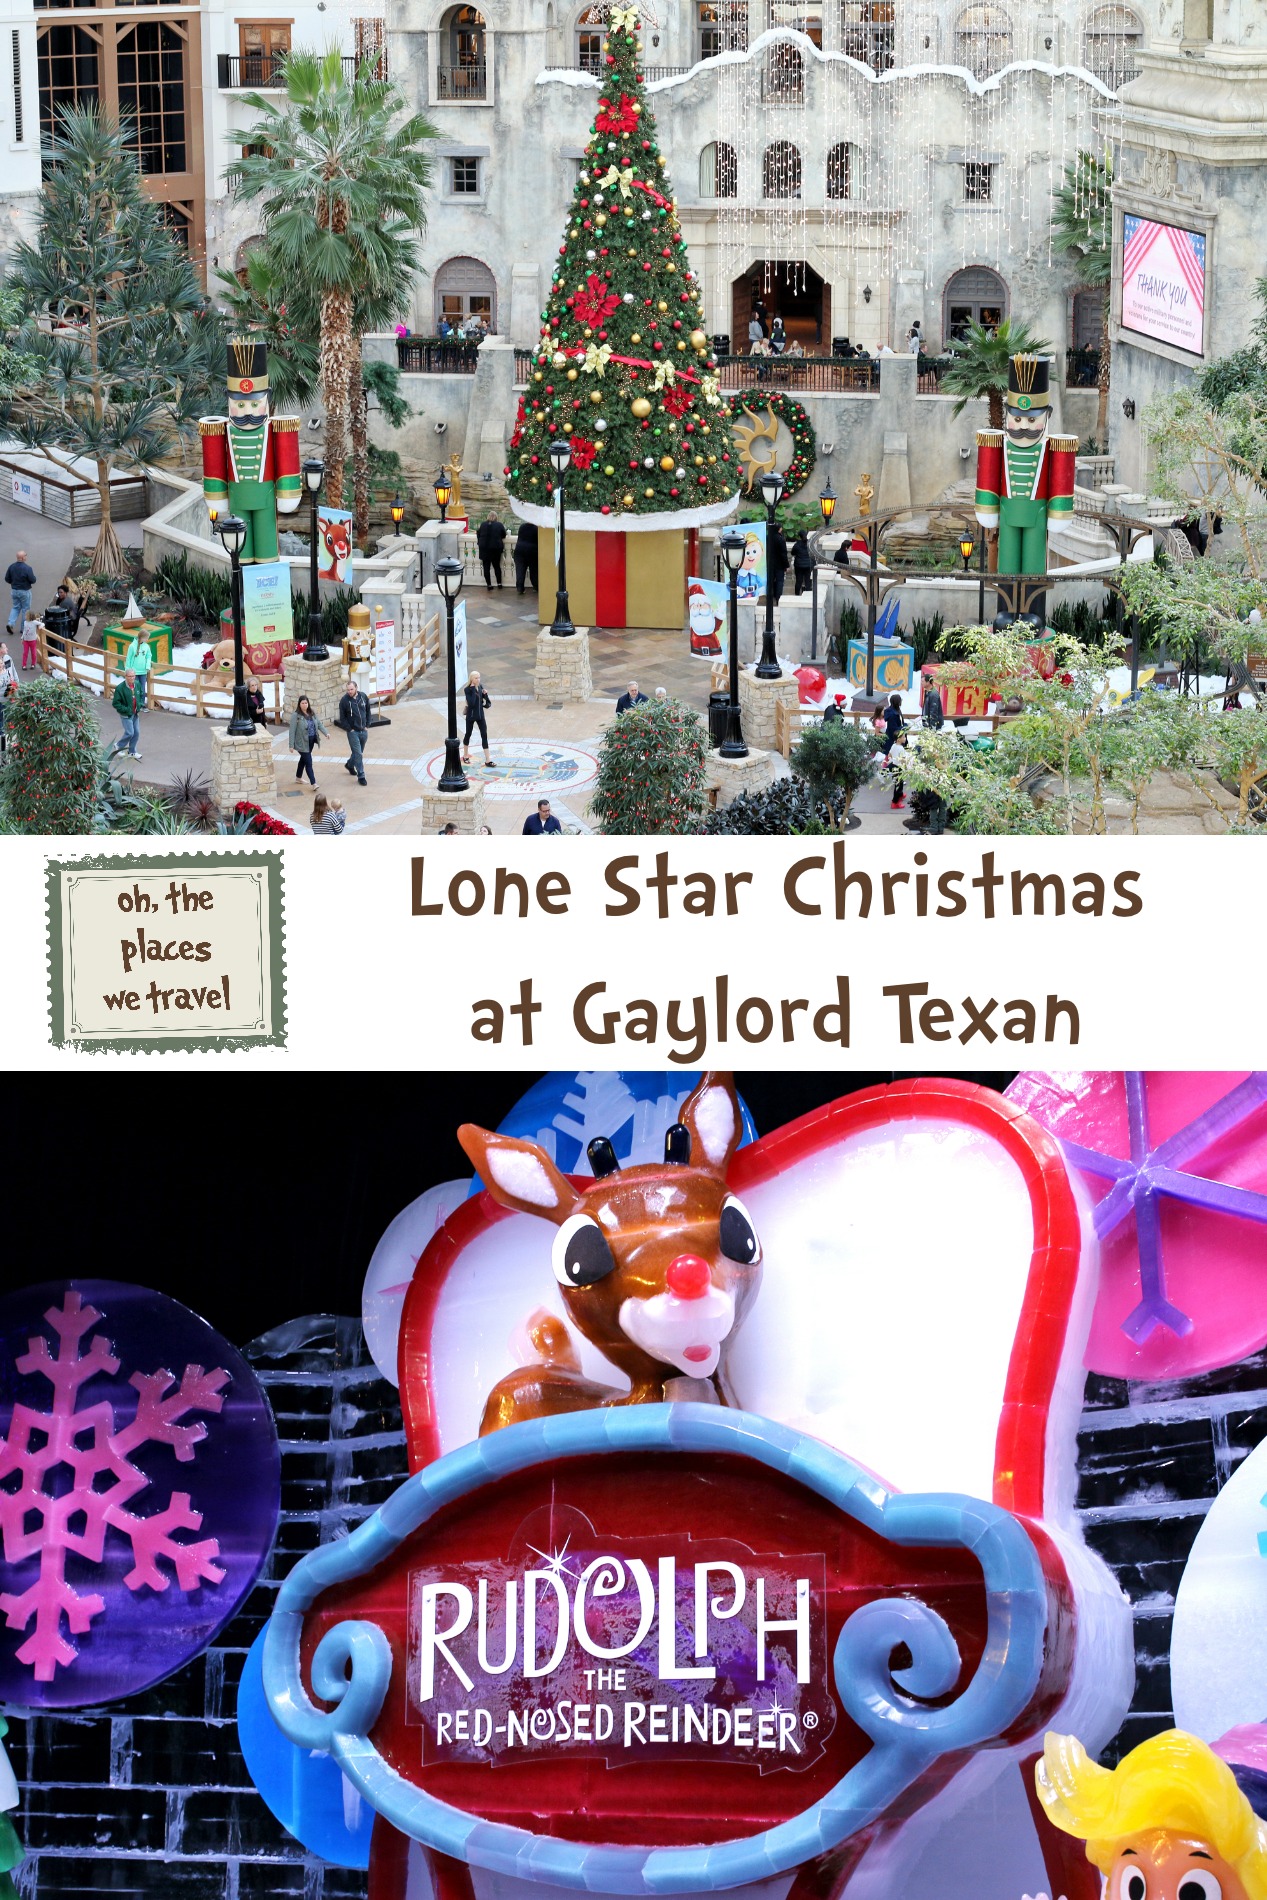 Lone Star Christmas at Gaylord Texan